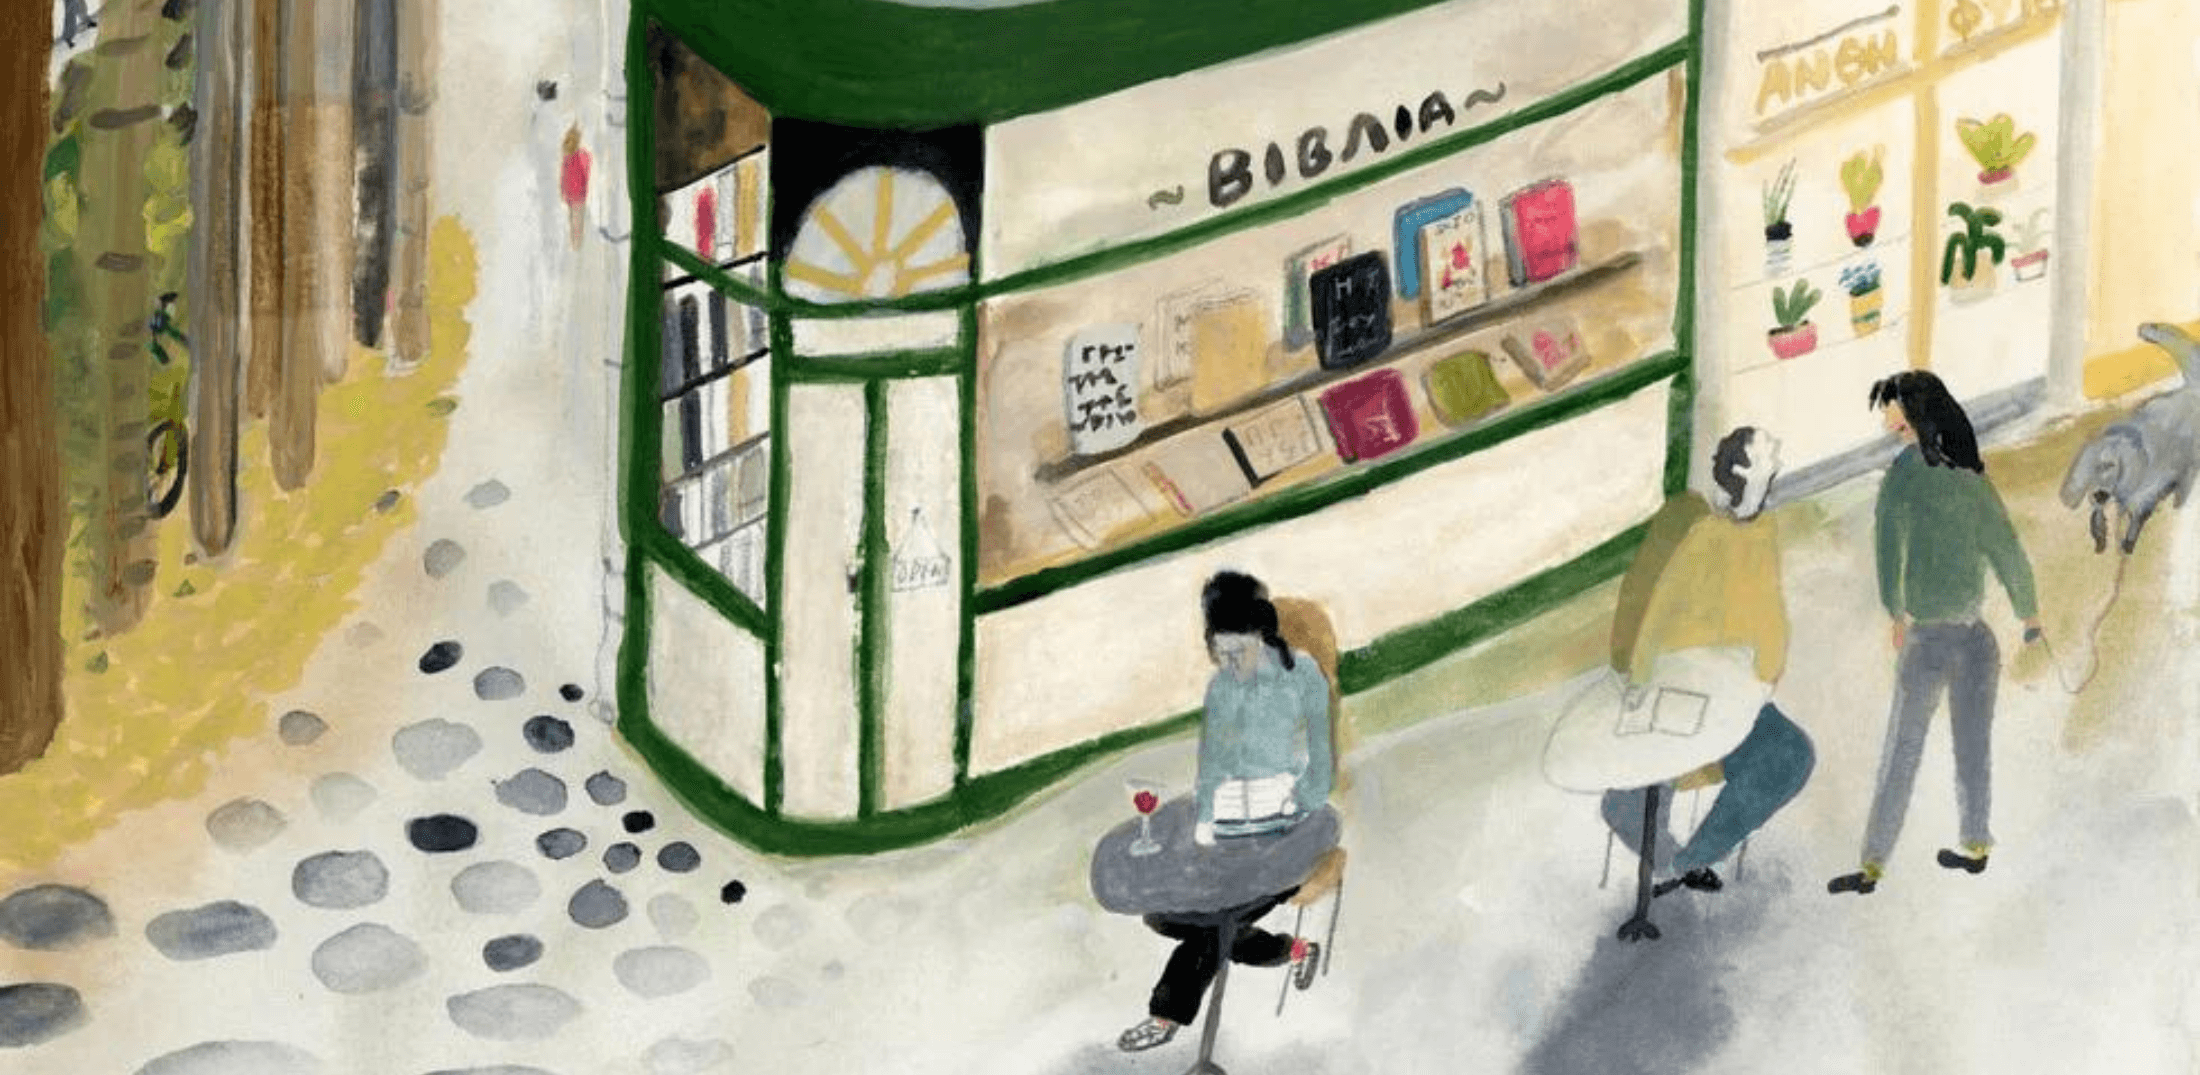 Little Bookstores Week